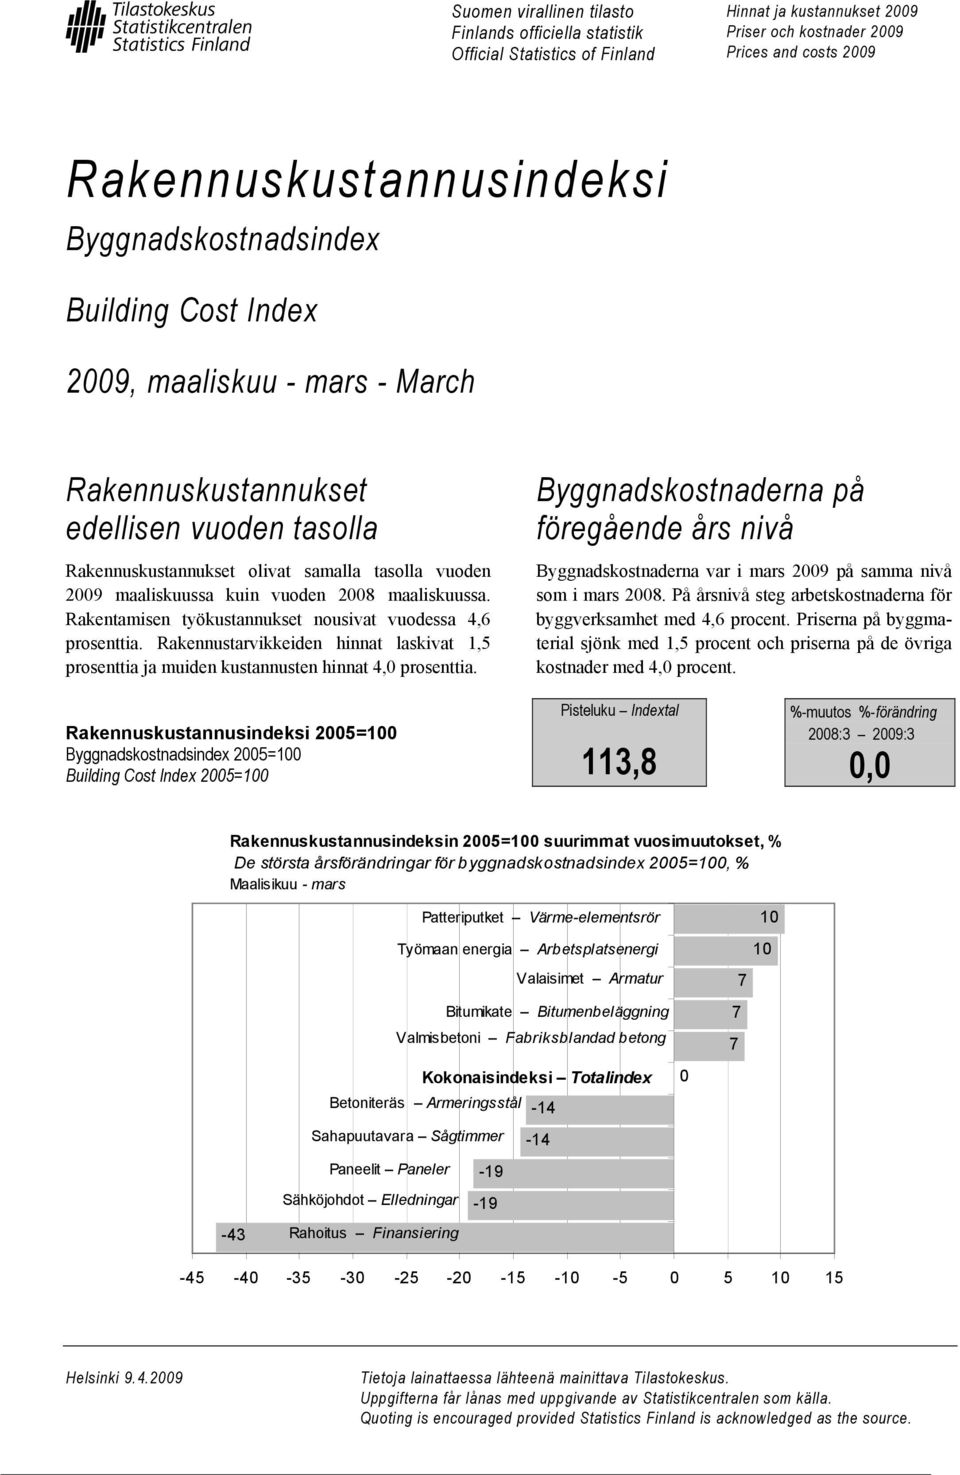 2008 maaliskuussa. Rakentamisen työkustannukset nousivat vuodessa 4,6 prosenttia. Rakennustarvikkeiden hinnat laskivat 1,5 prosenttia ja muiden kustannusten hinnat 4,0 prosenttia.